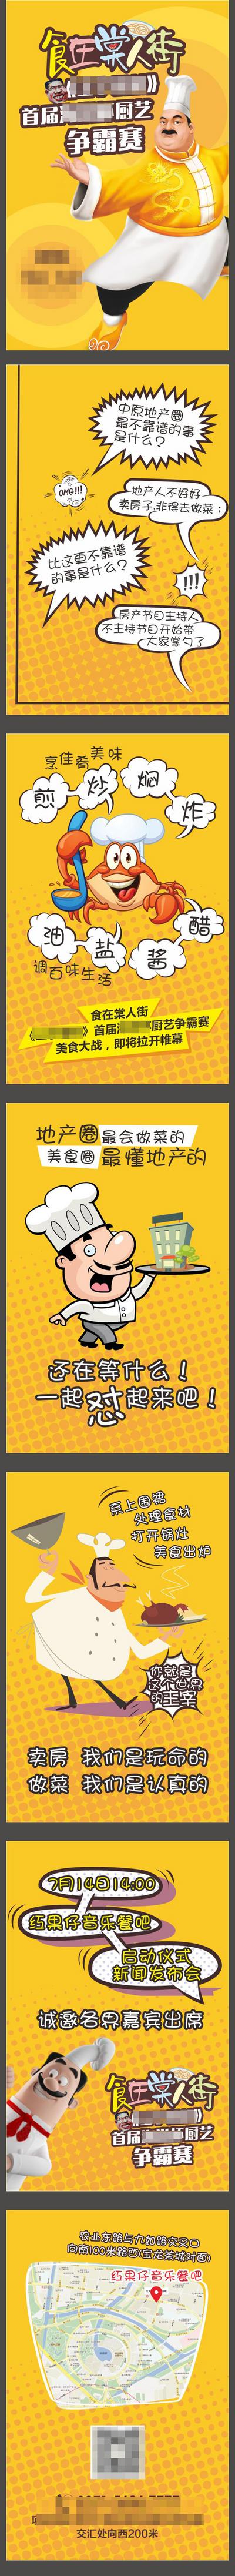 南门网 海报 H5 厨师 厨艺 比拼 大赛 比赛 业主 手绘 插画